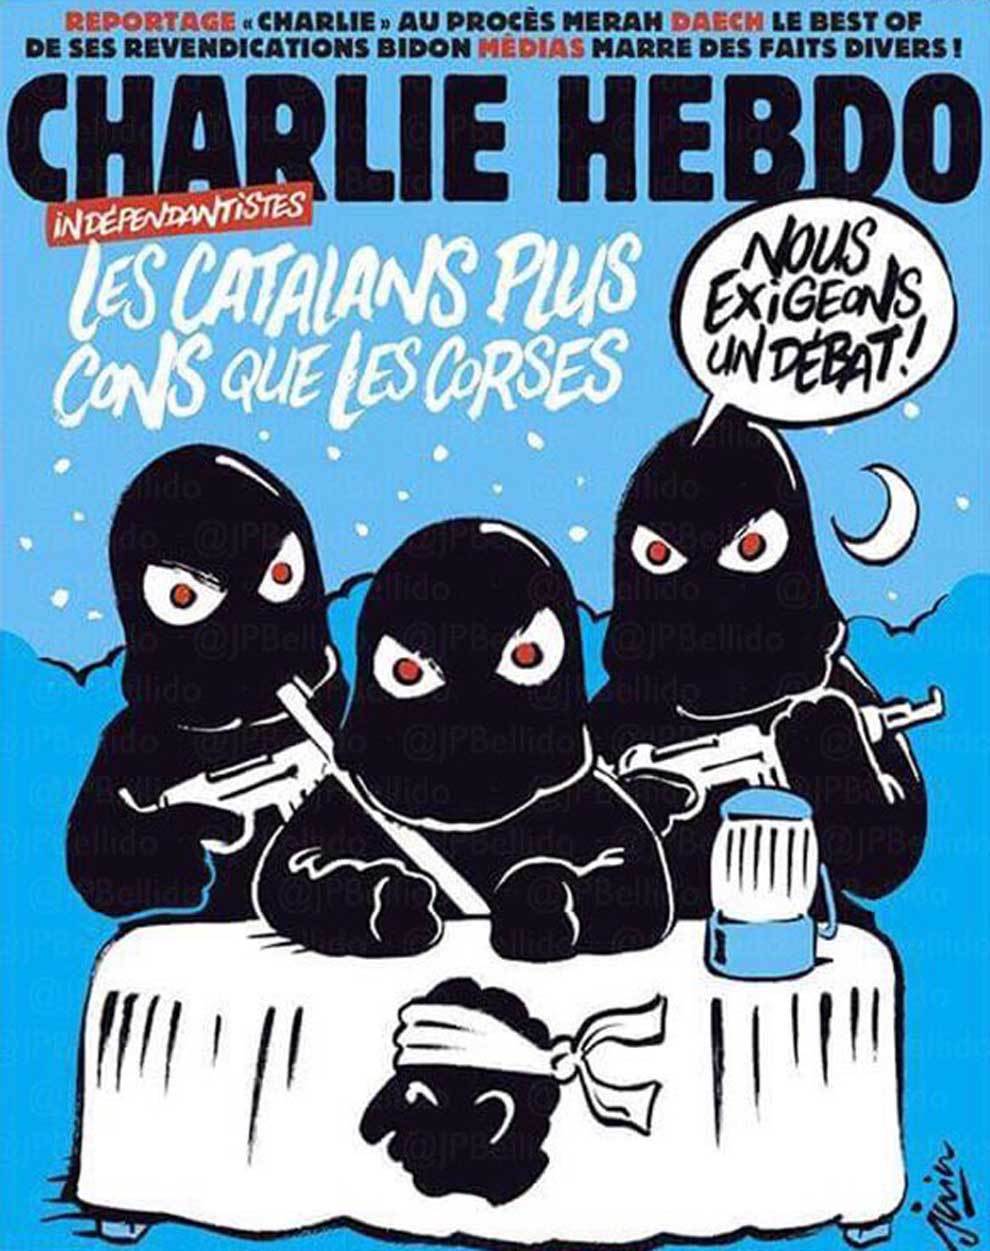 Charlie Hebdo: "Los catalanes, más tontos que los corsos"